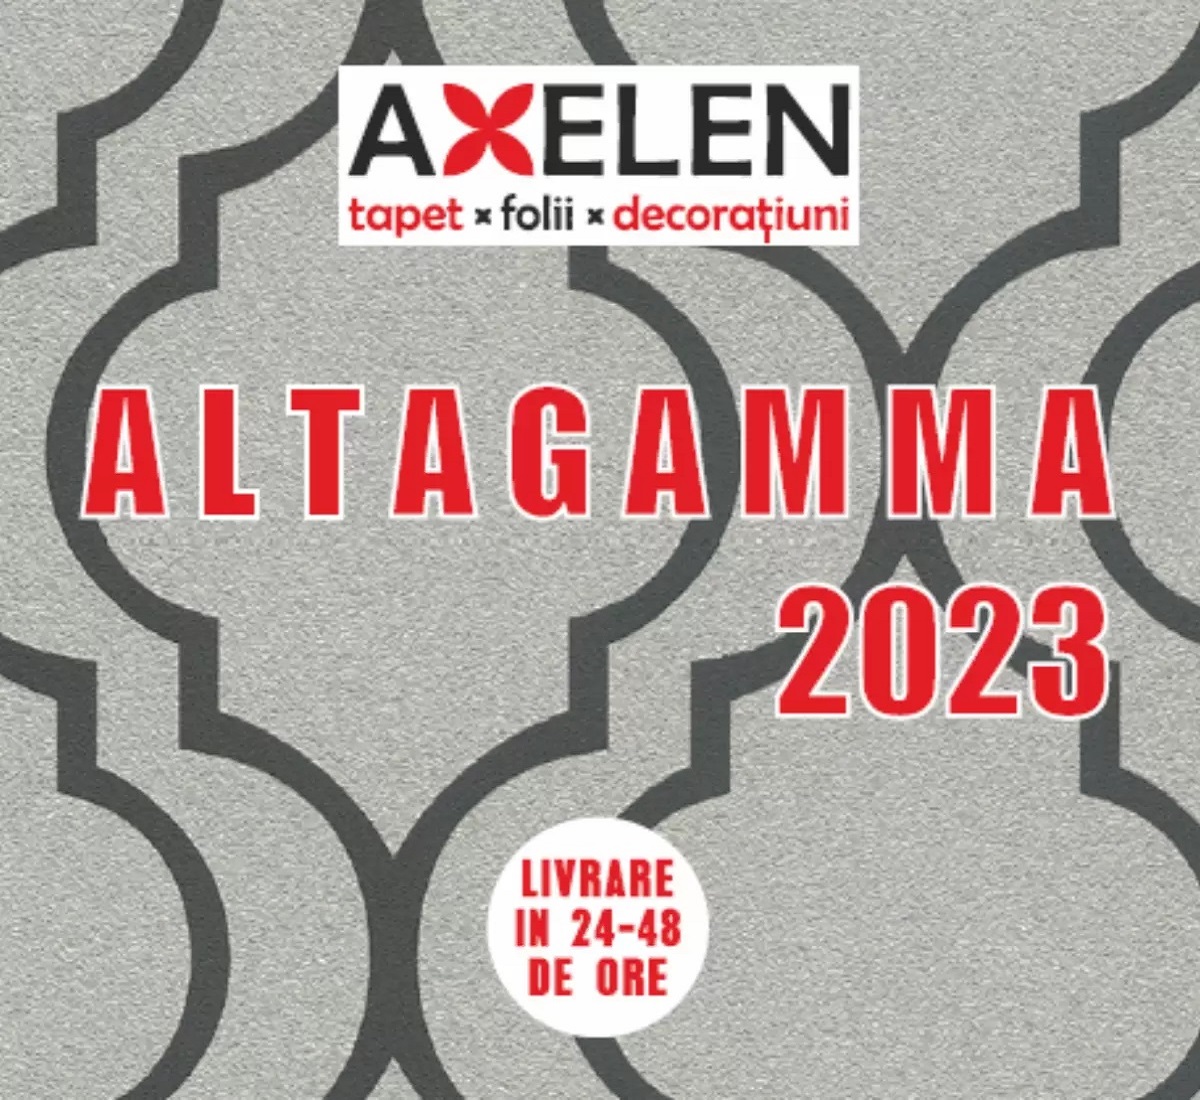 Axelen - Cataloag Altagamma